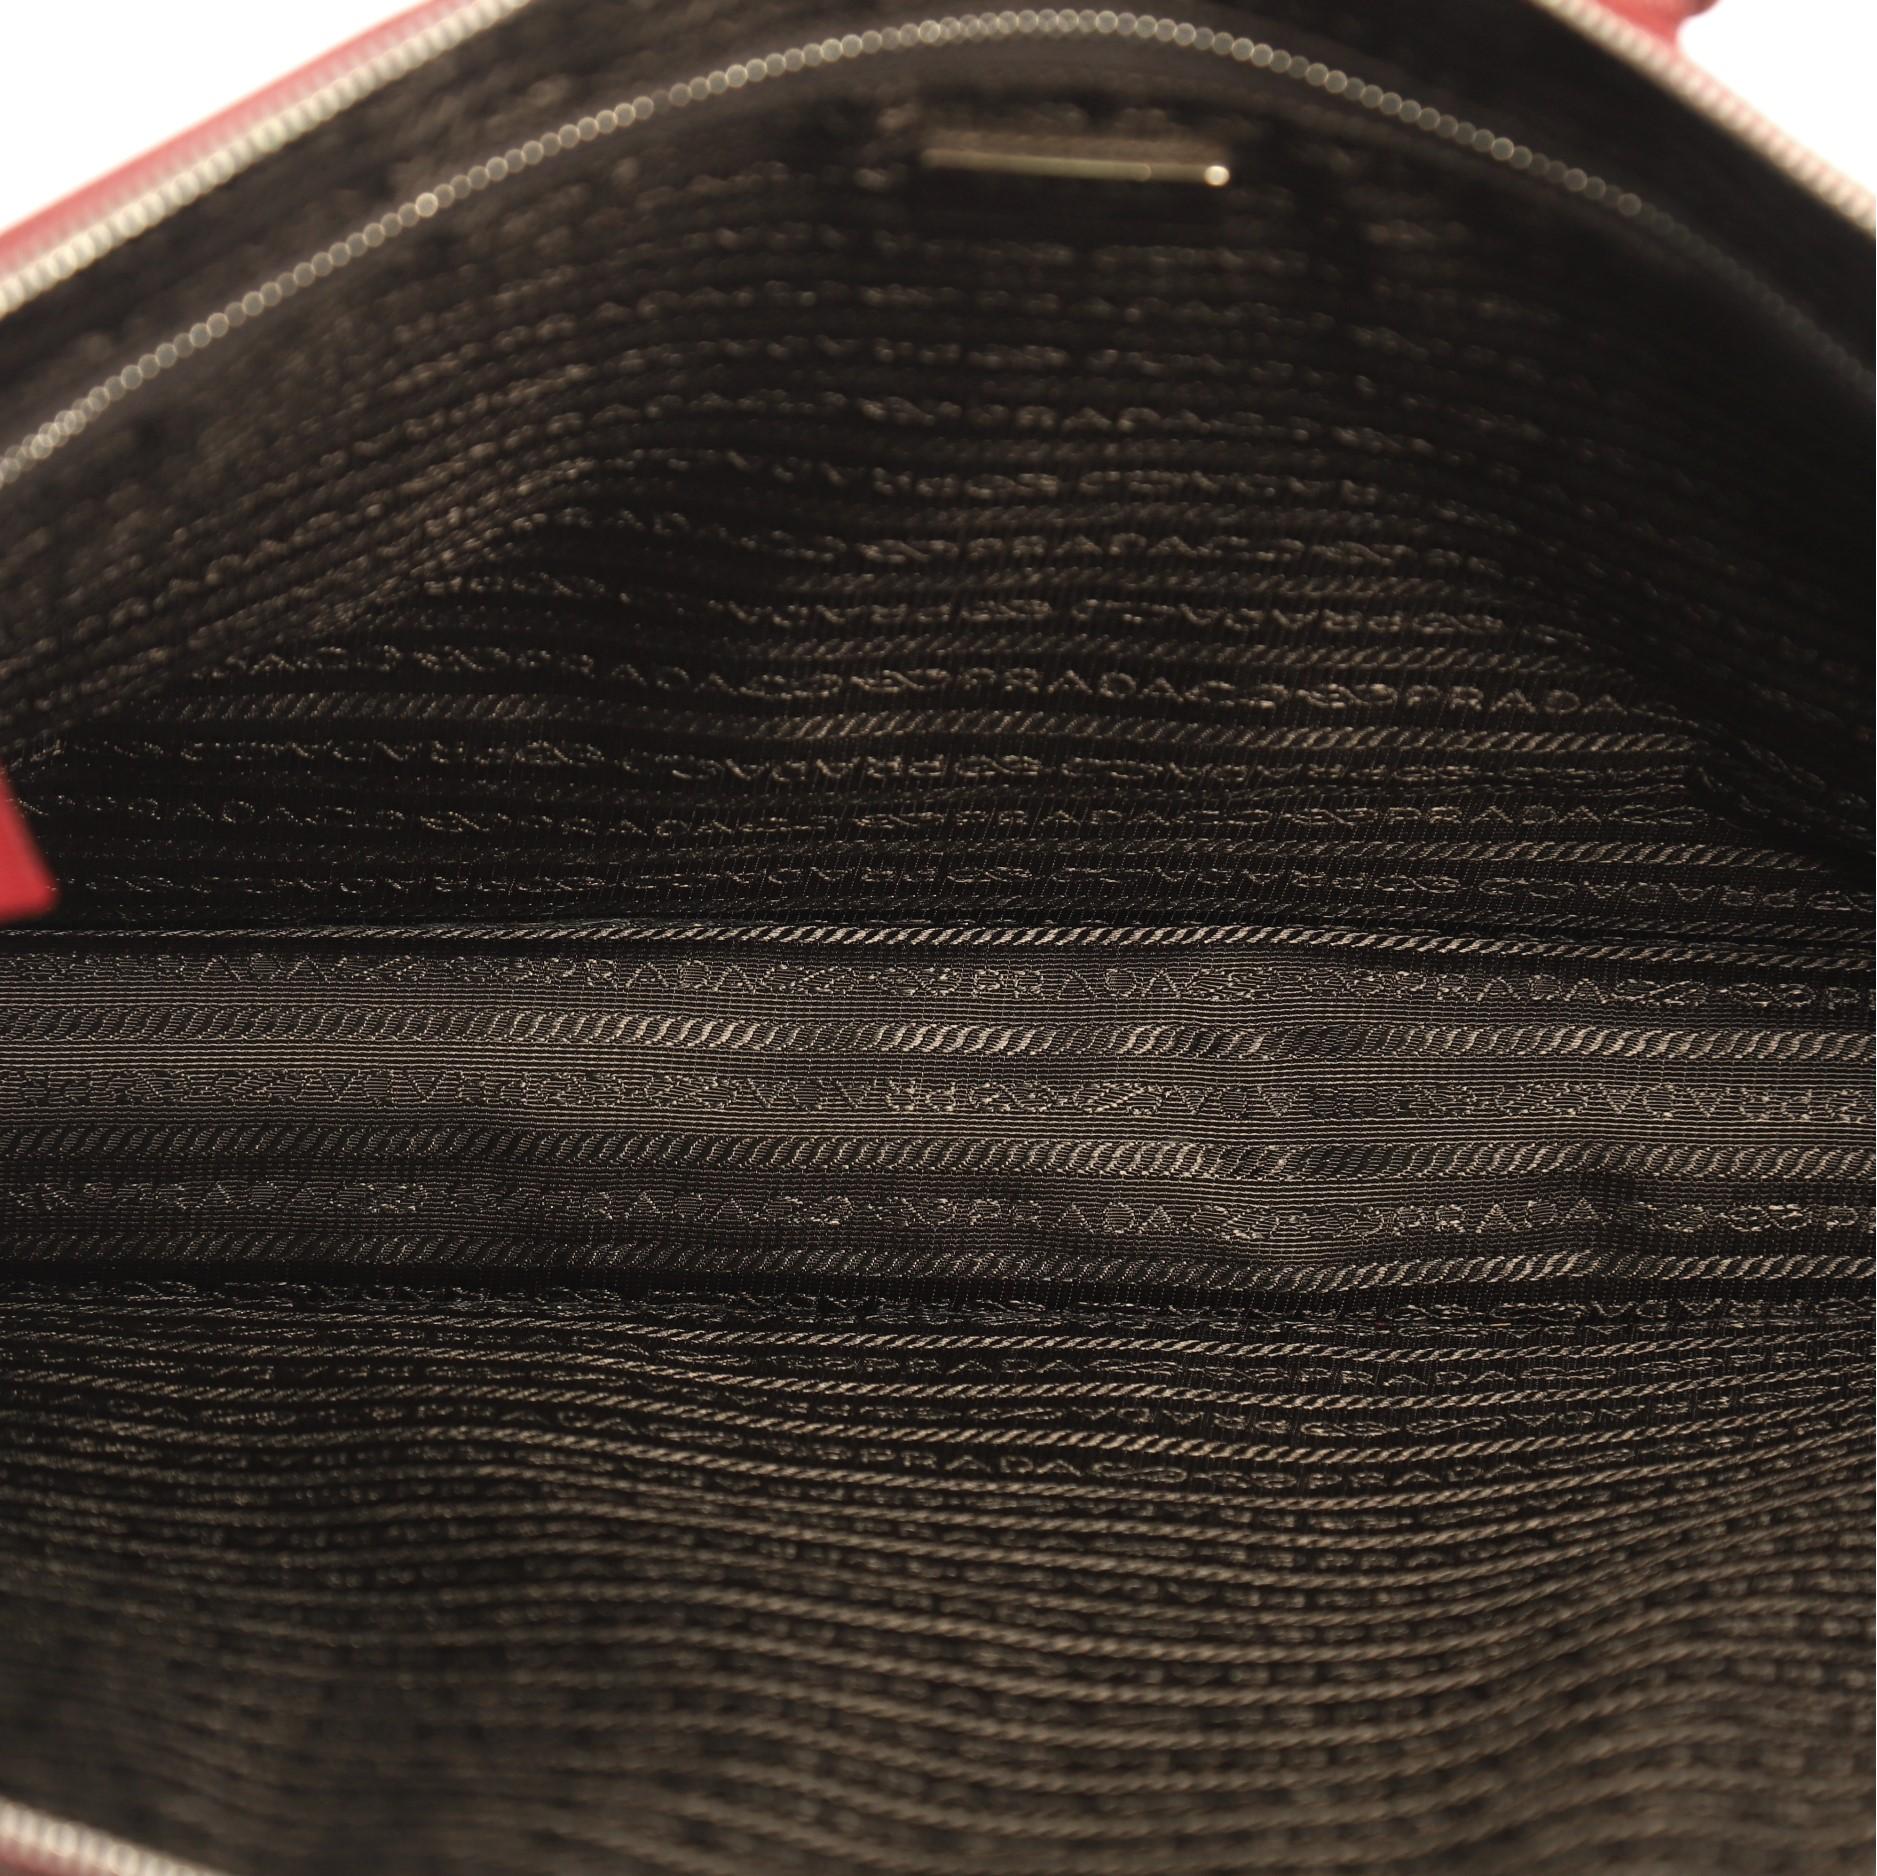 Prada Travel Briefcase Saffiano Leather 4